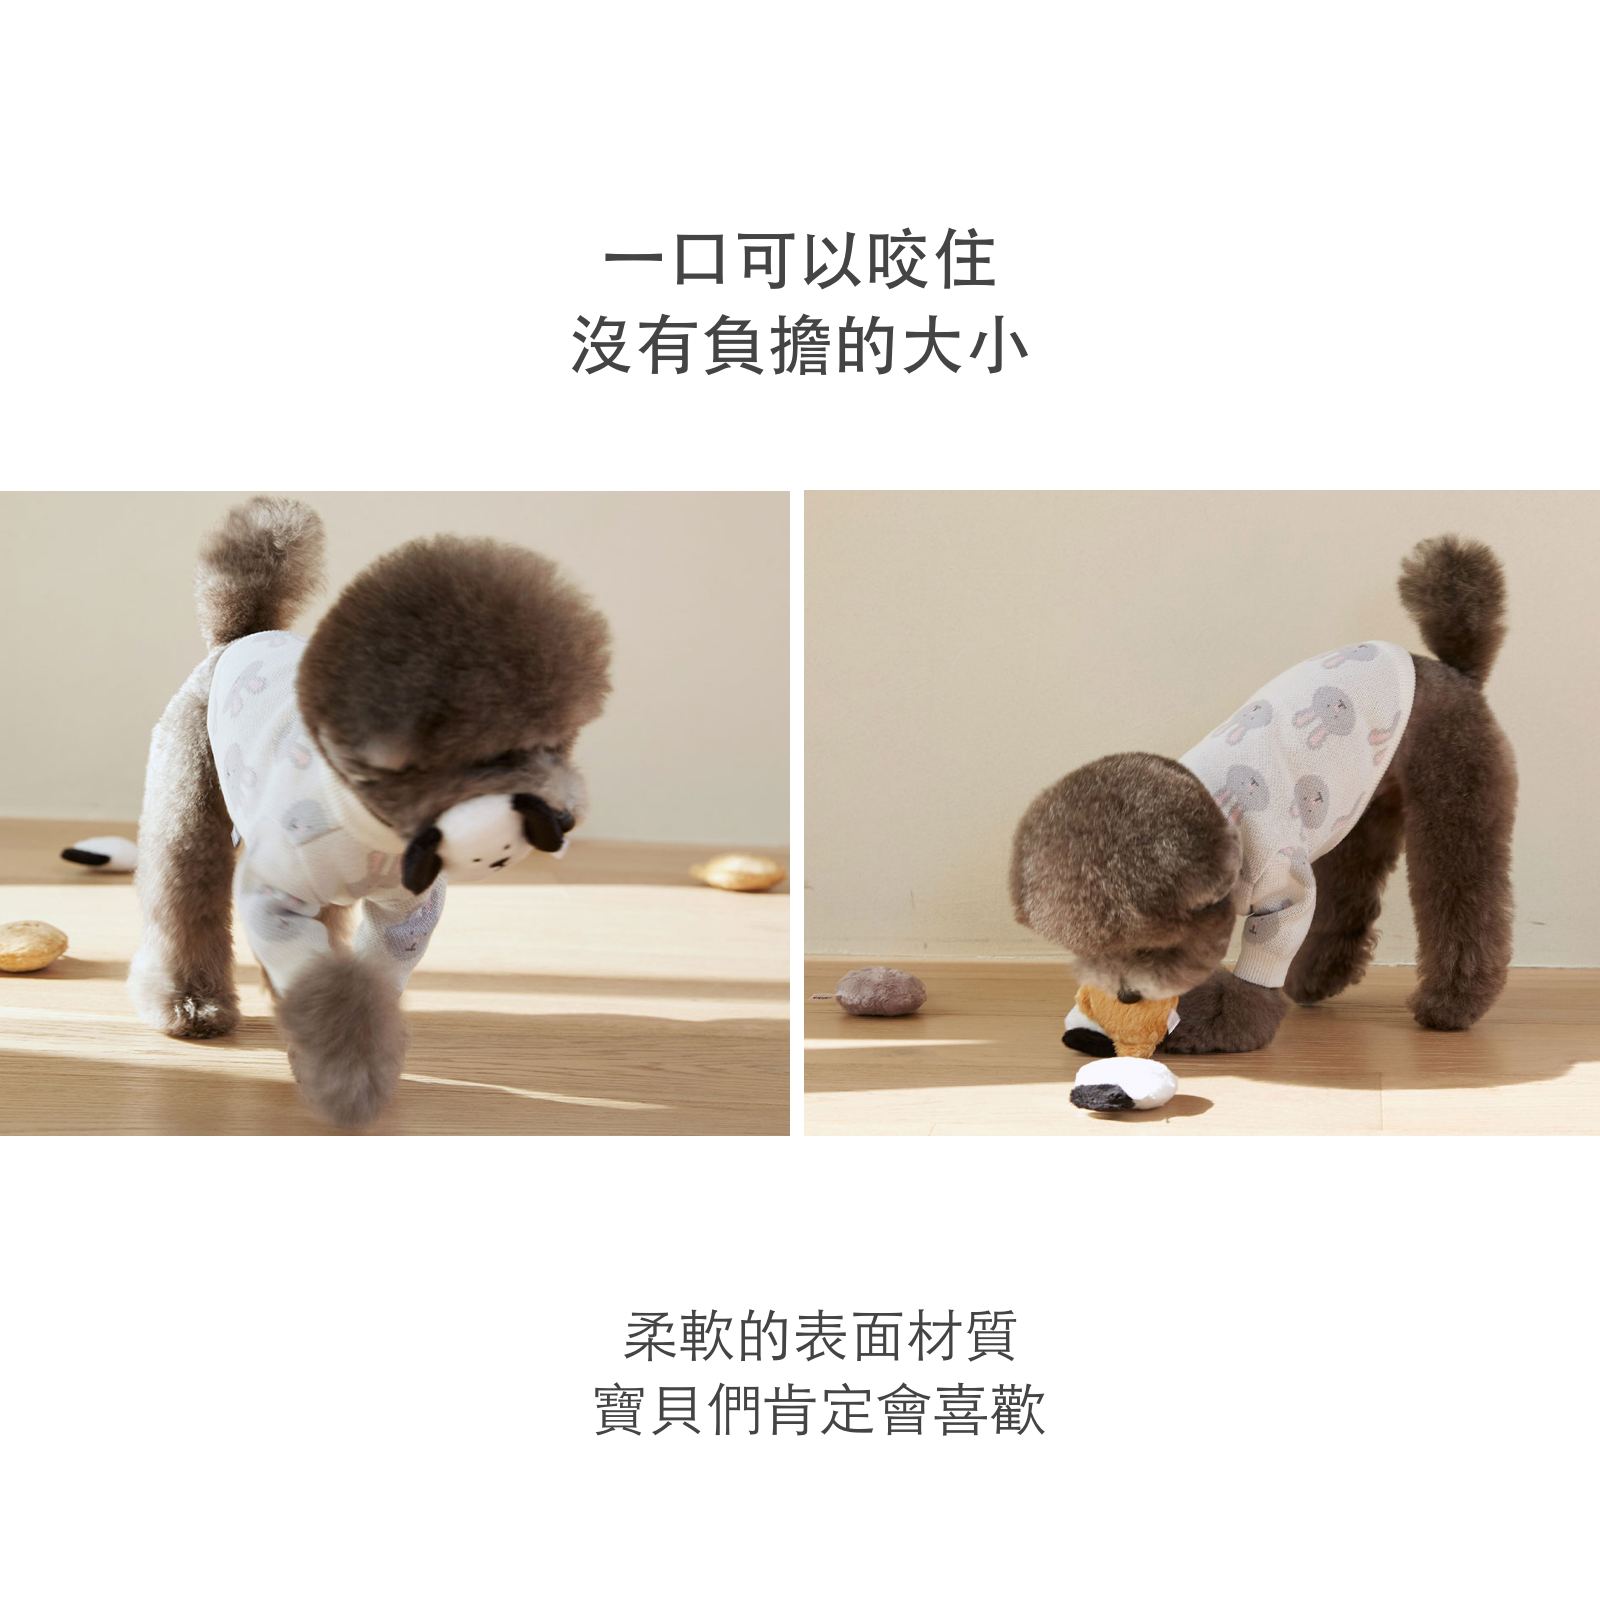 韓國 likalika 小夥伴系列貓狗玩具